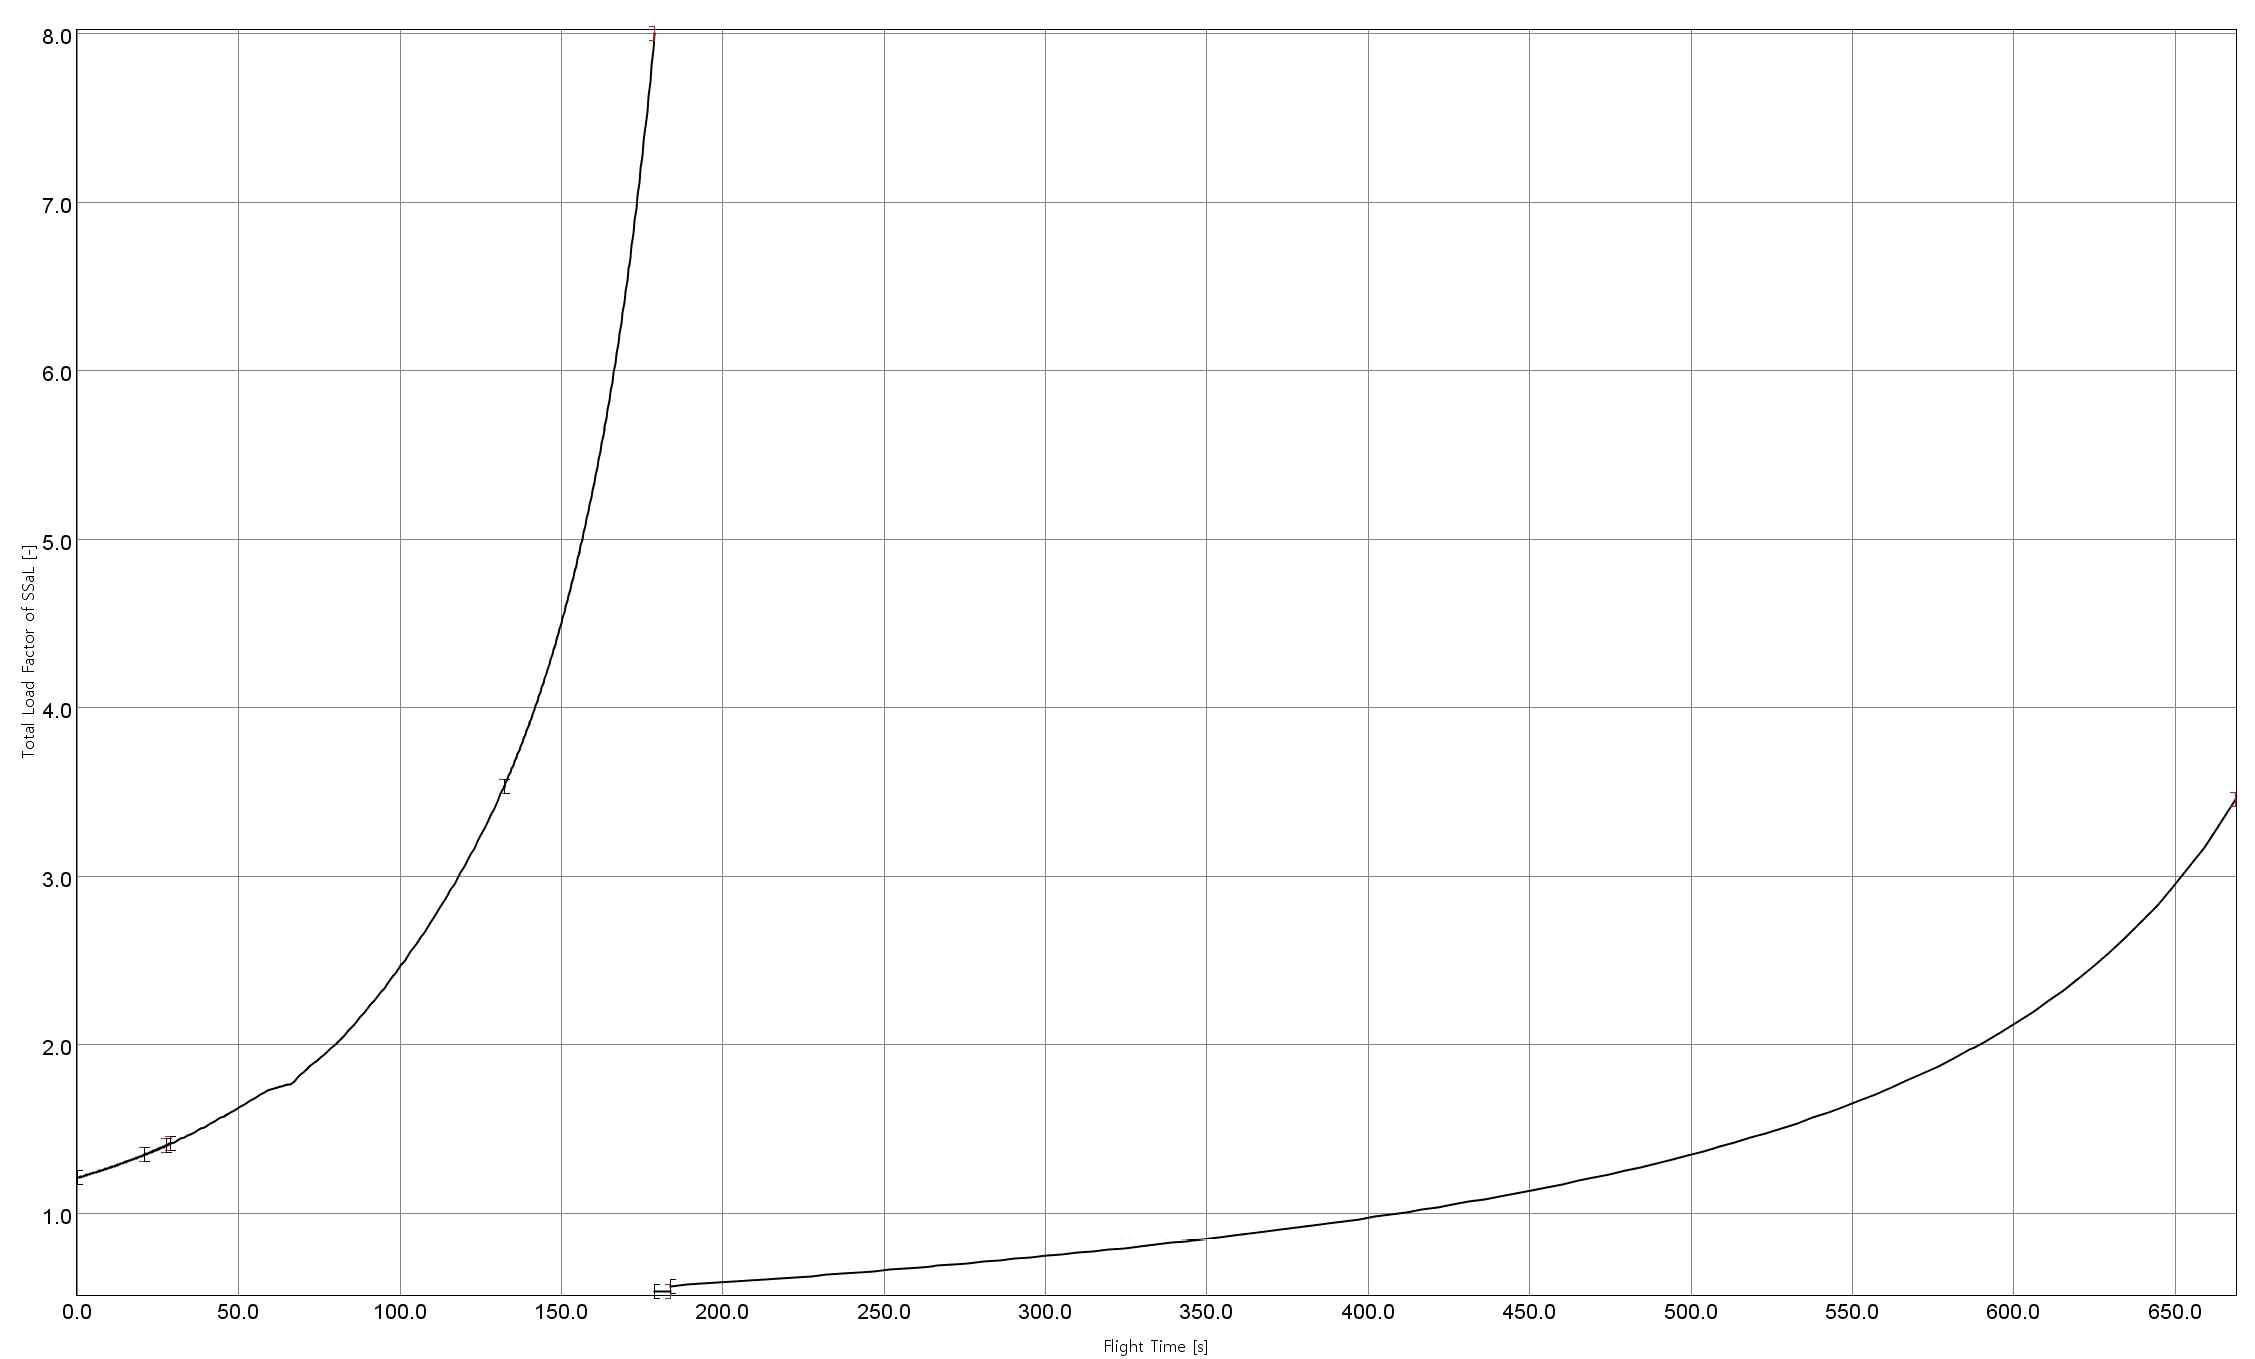 소형발사체 개념설계 1안(75K+3K)의 비행시간에 따른 load factor